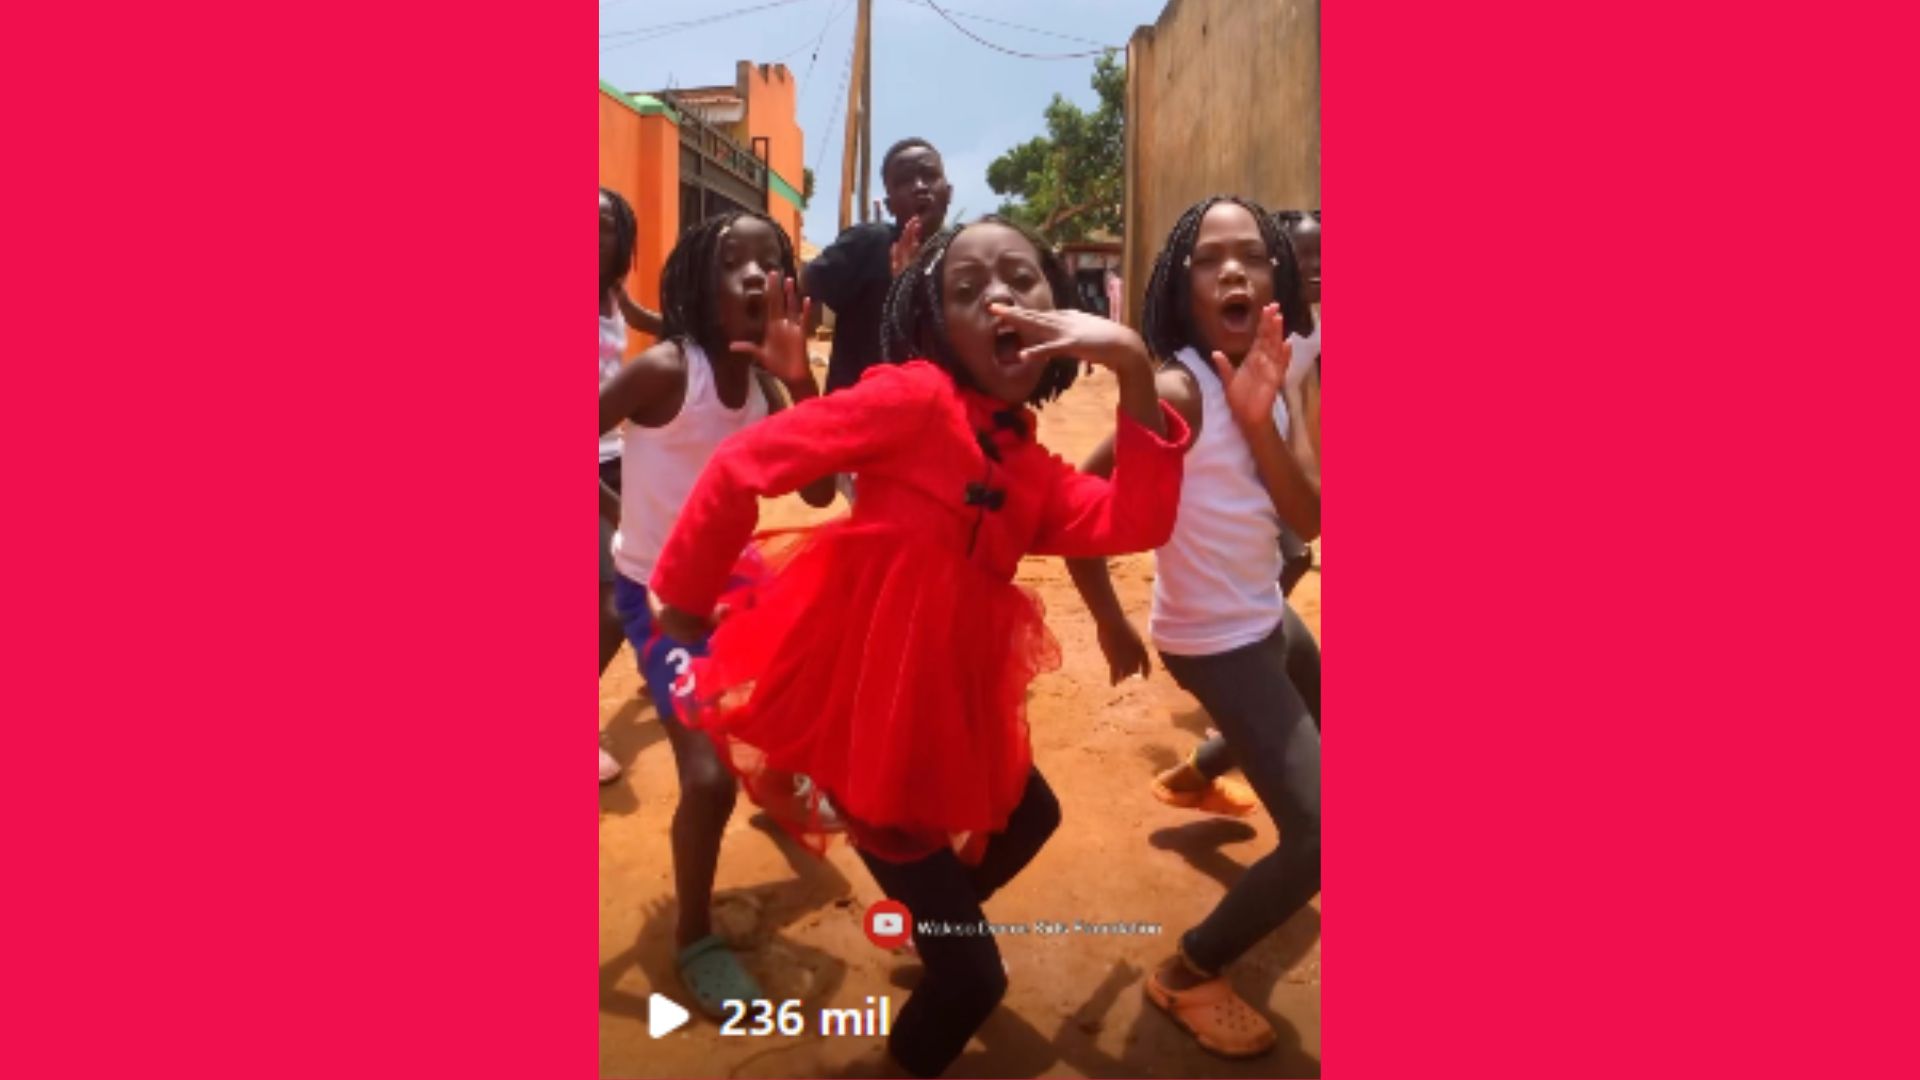 Grupo de dança de órfãos ugandeses bombou nas redes sociais com coreografia  ao som do hit 'Fica Amor'